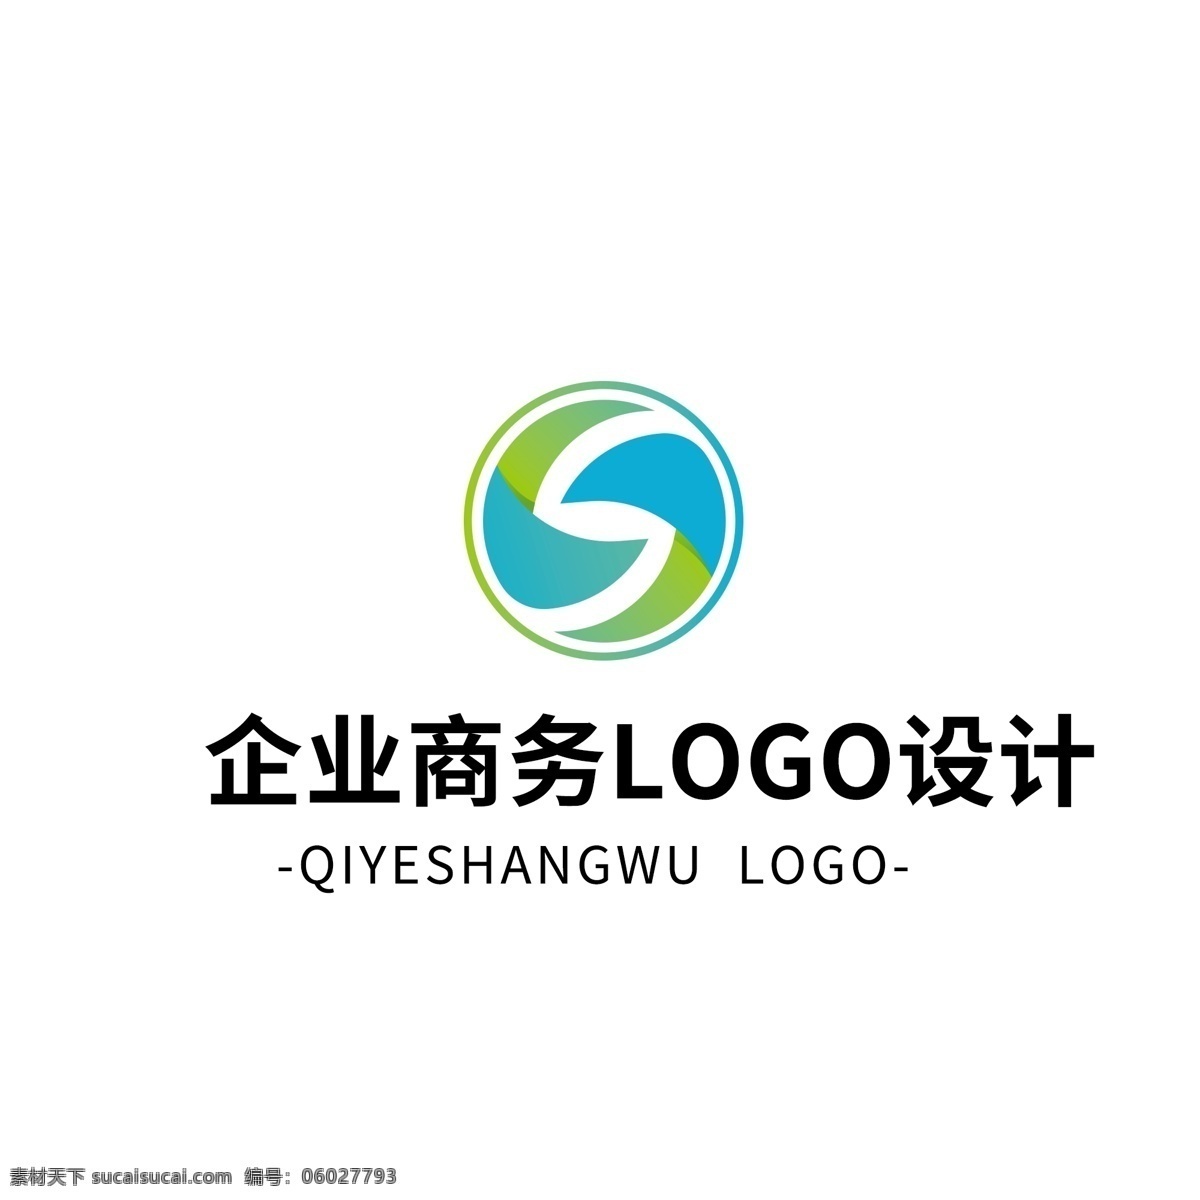 简约 大气 创意 企业 商务 logo 标志设计 渐变